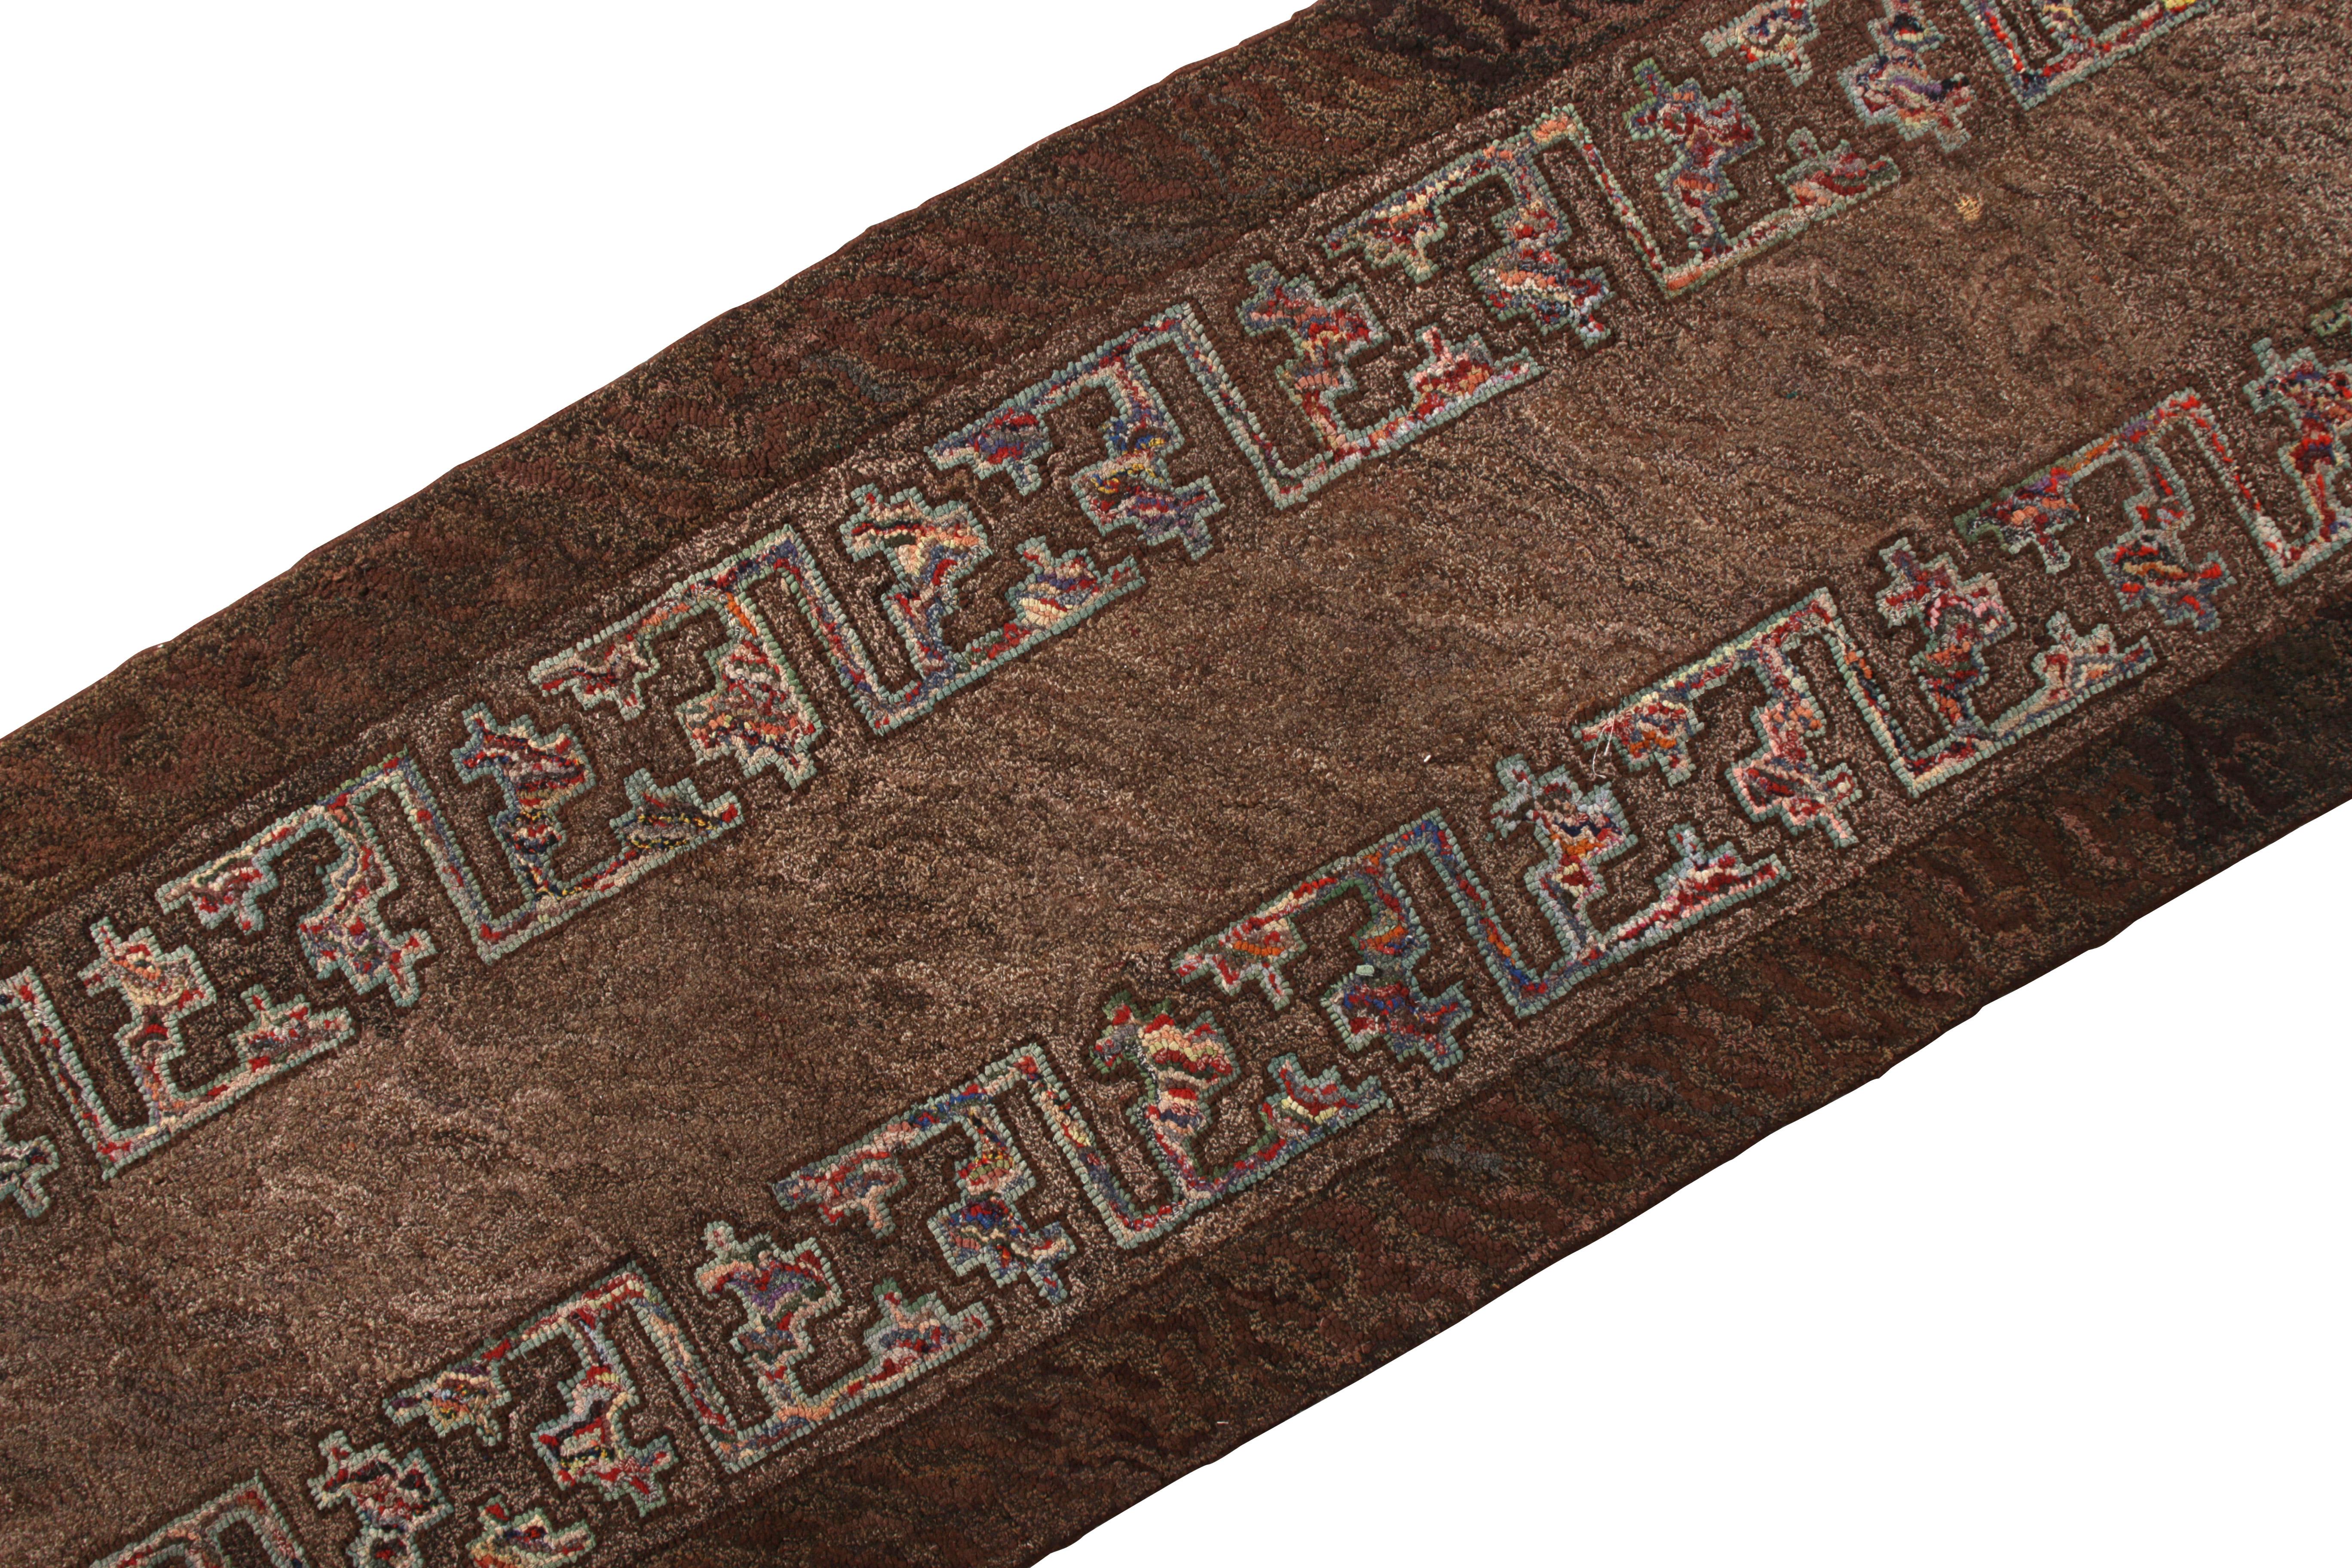 Tribal Antique Hand-Hooked Rug Beige Brown Geometric Runner